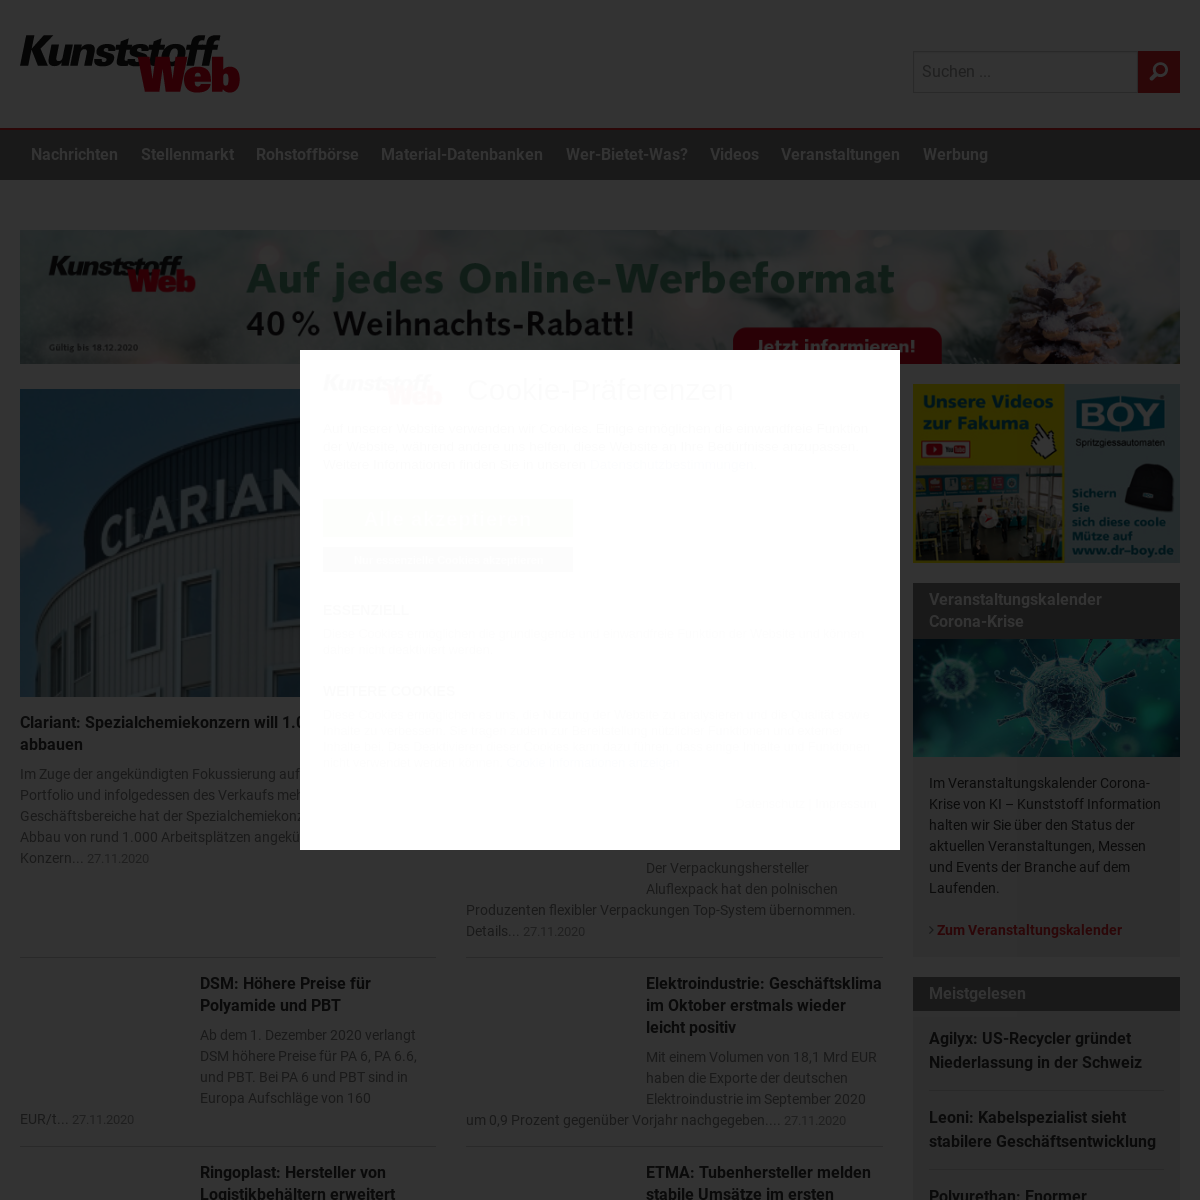 A complete backup of kunststoffweb.de